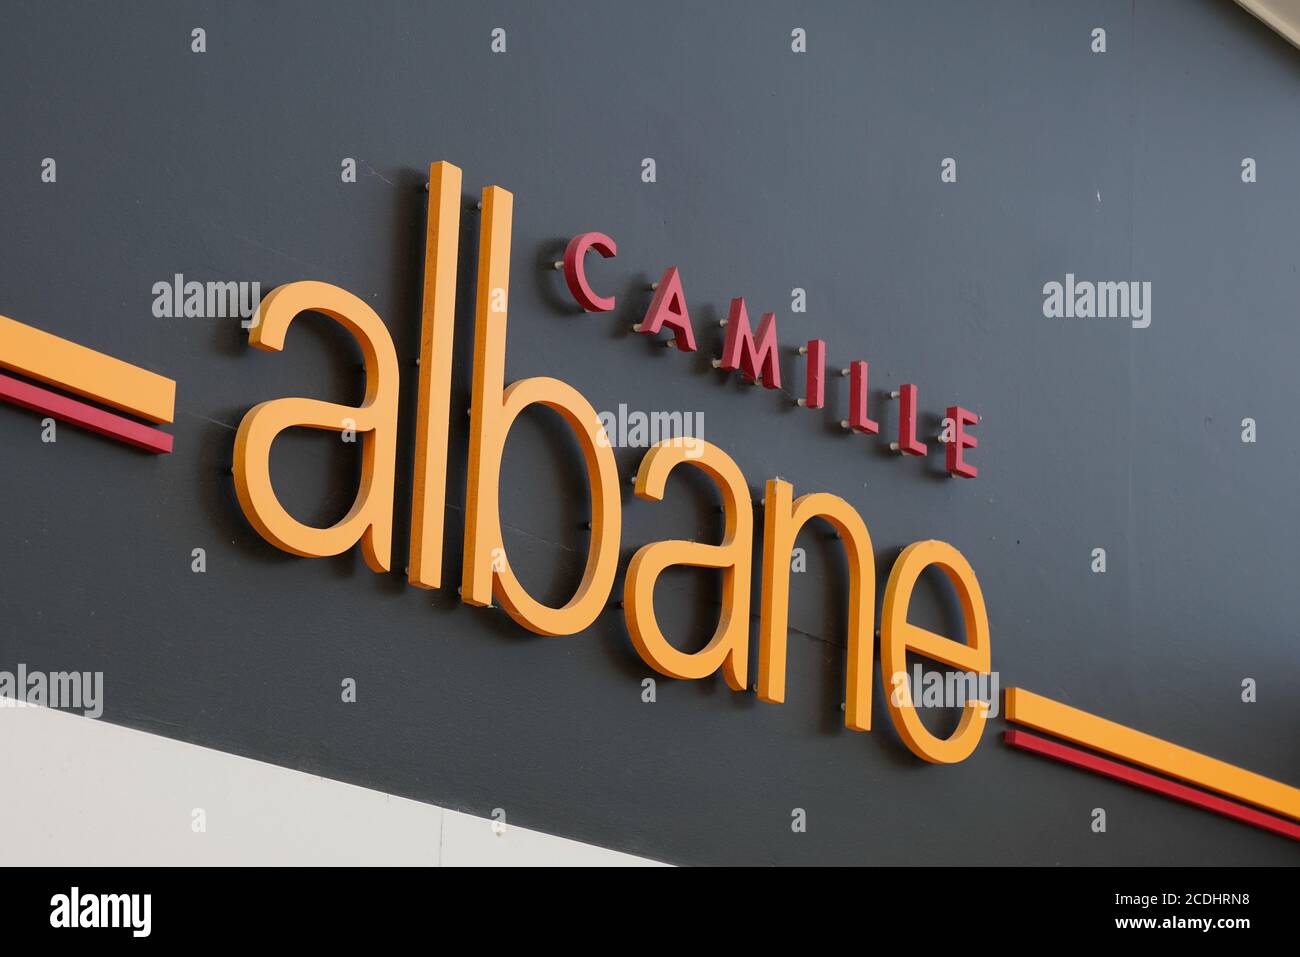 Bordeaux , Aquitaine / France - 08 25 2020 : camille albane signe texte et logo boutique avant magasin femmes salon de coiffure français Banque D'Images